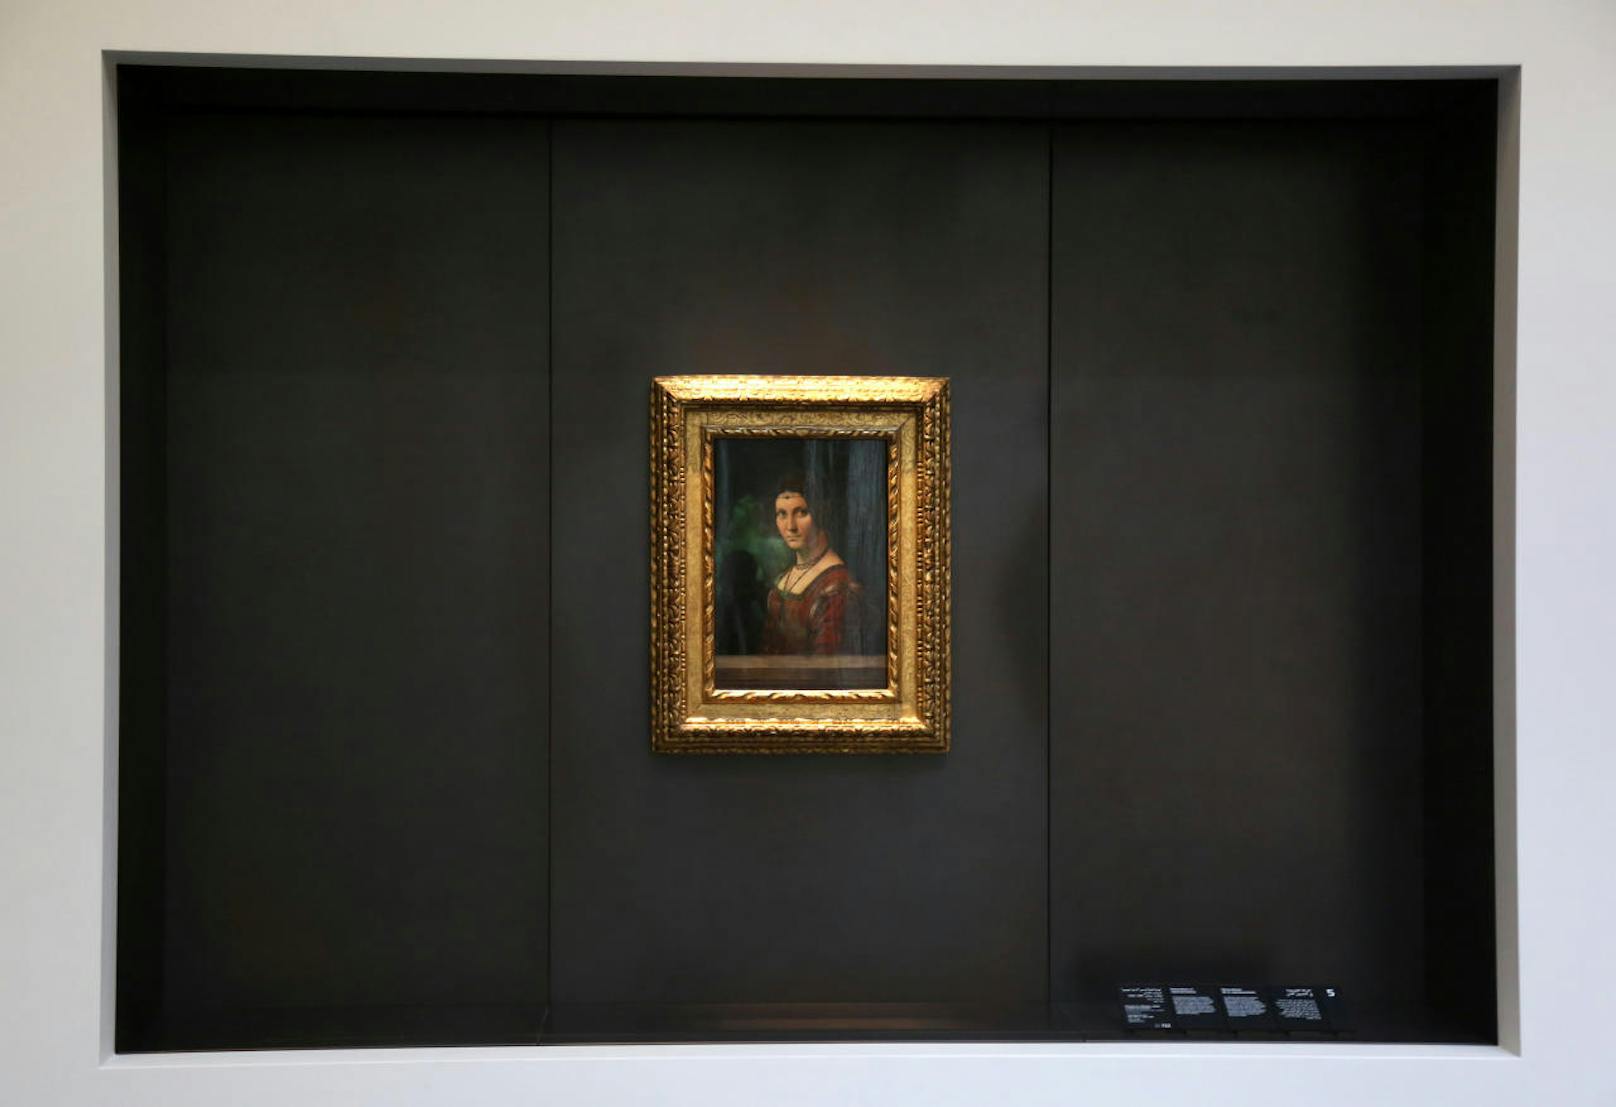 "Ferronière", ein Gemälde, das Leonardo da Vinci zugeschrieben wird, wurde vom Louvre in Paris ausgeliehen